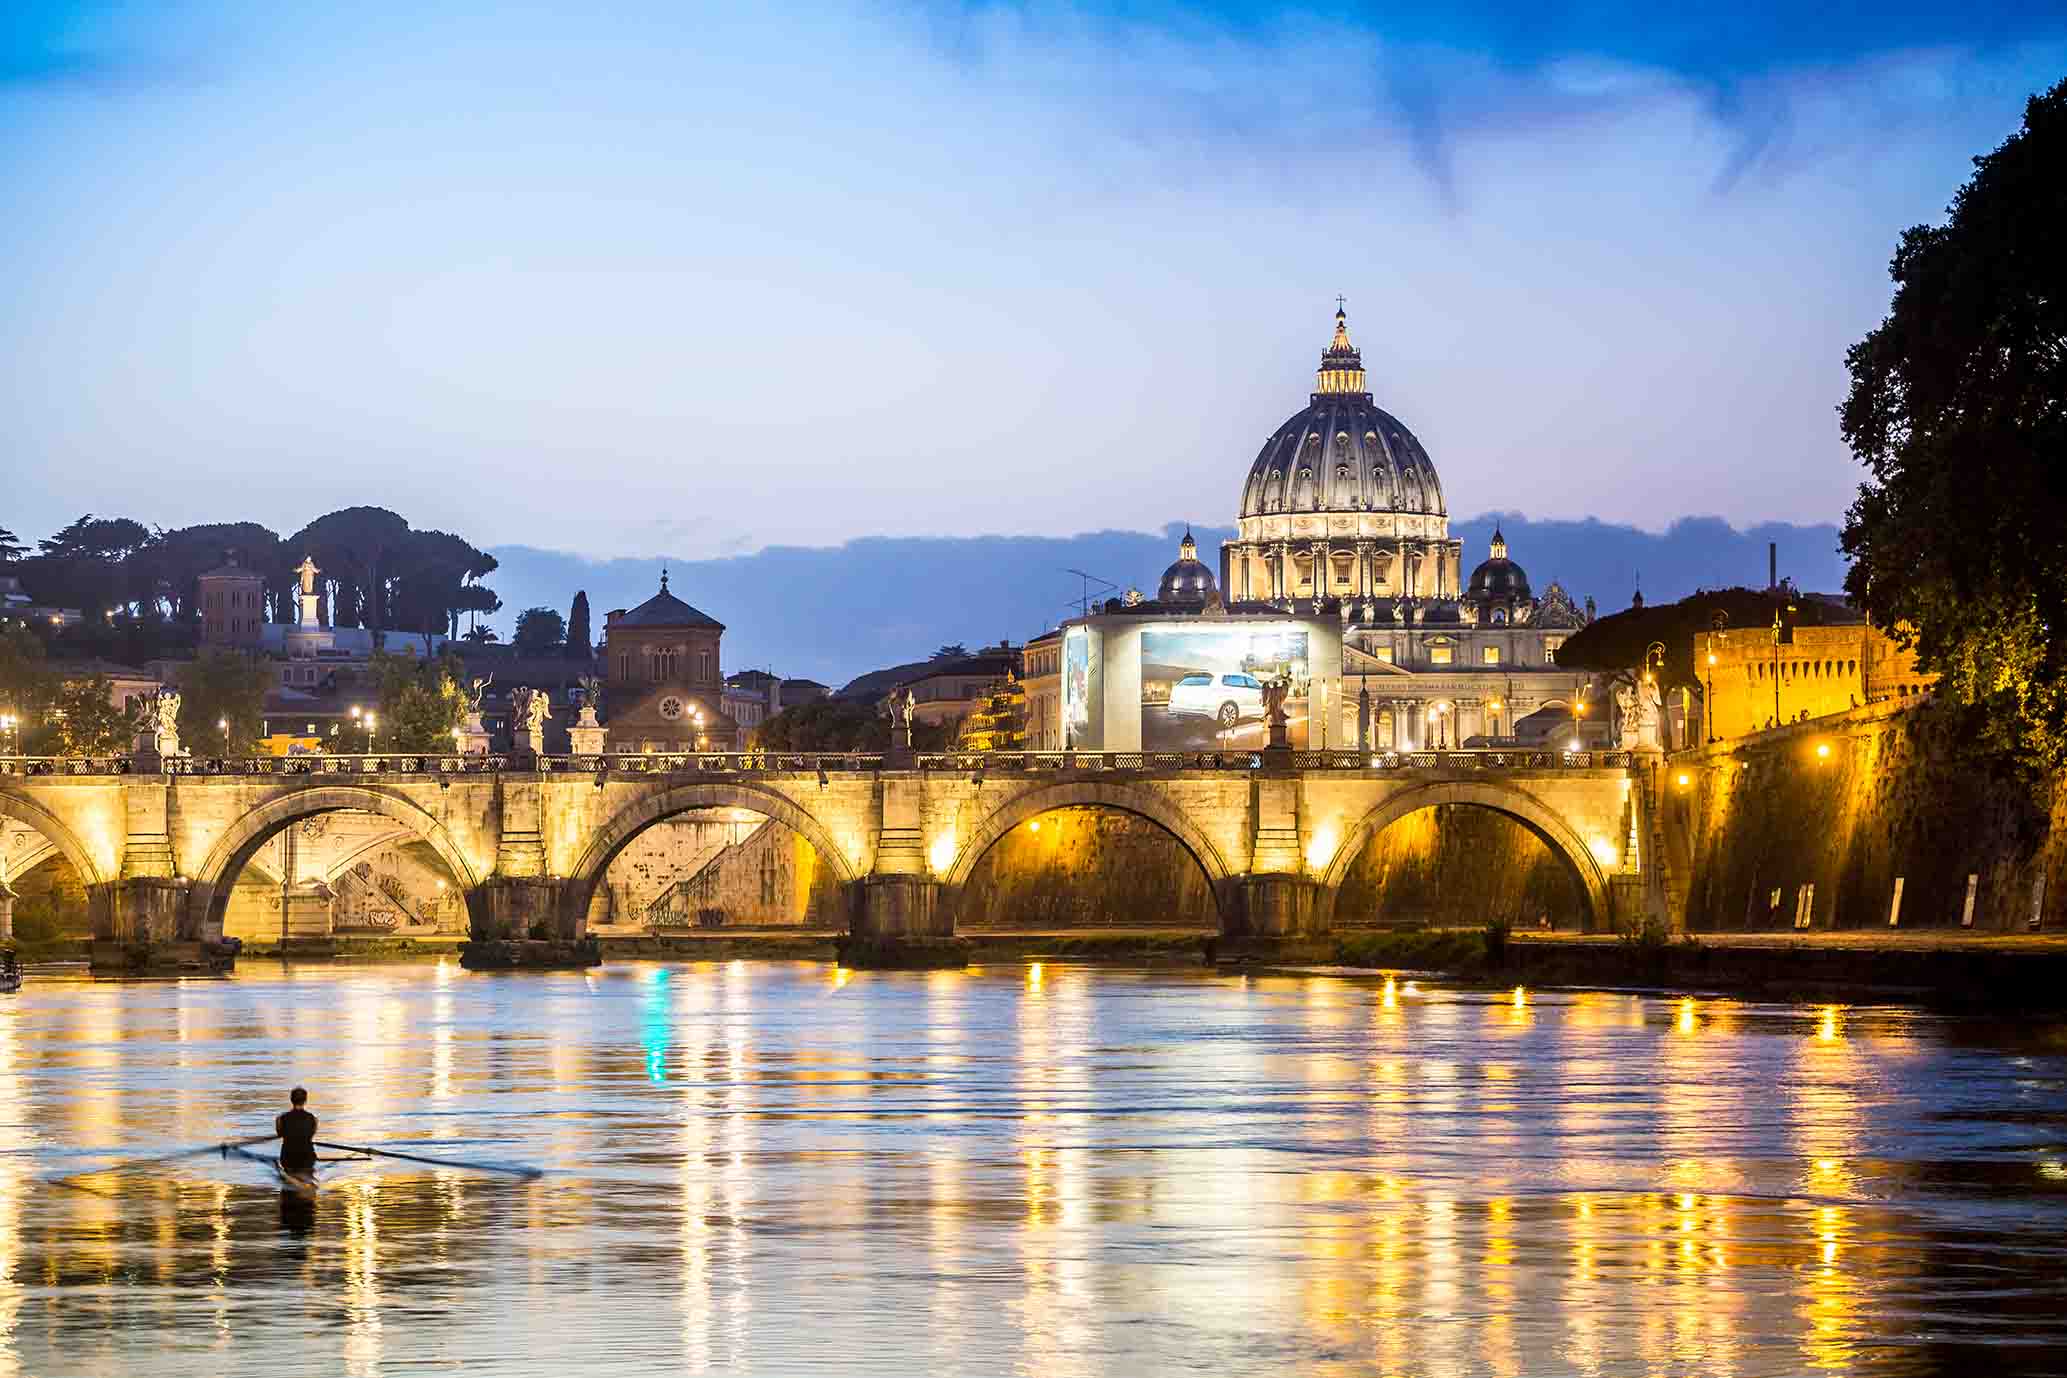 Despierta tus sentidos y sumérgete en el corazón del Vaticano - The Vatican: Immersive Experience Los Angeles